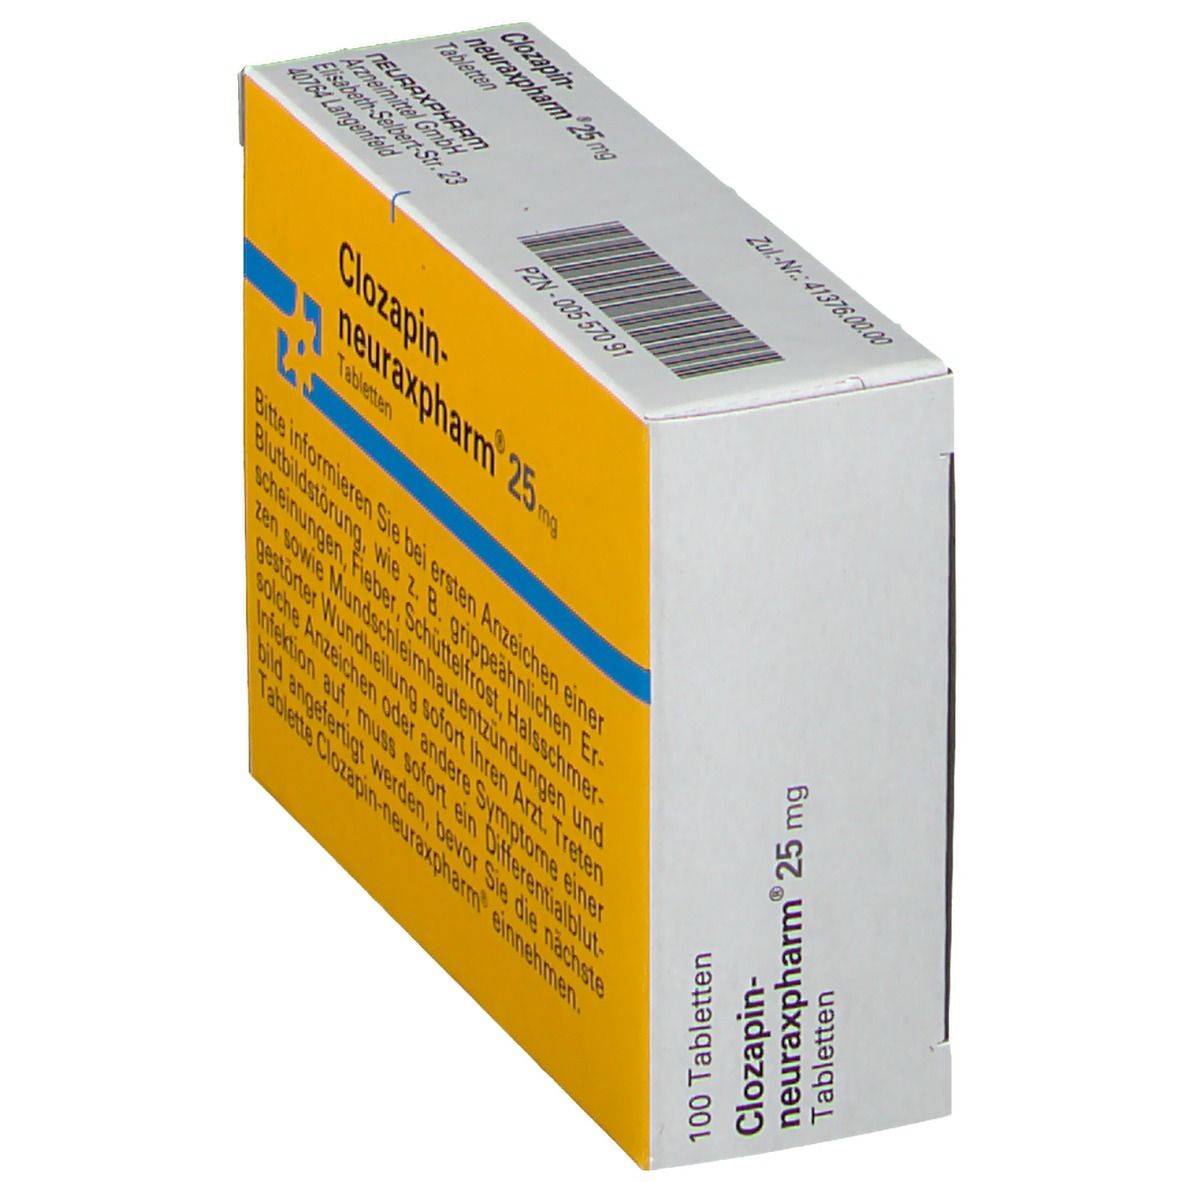 Clozapin-neuraxpharm® 25 mg